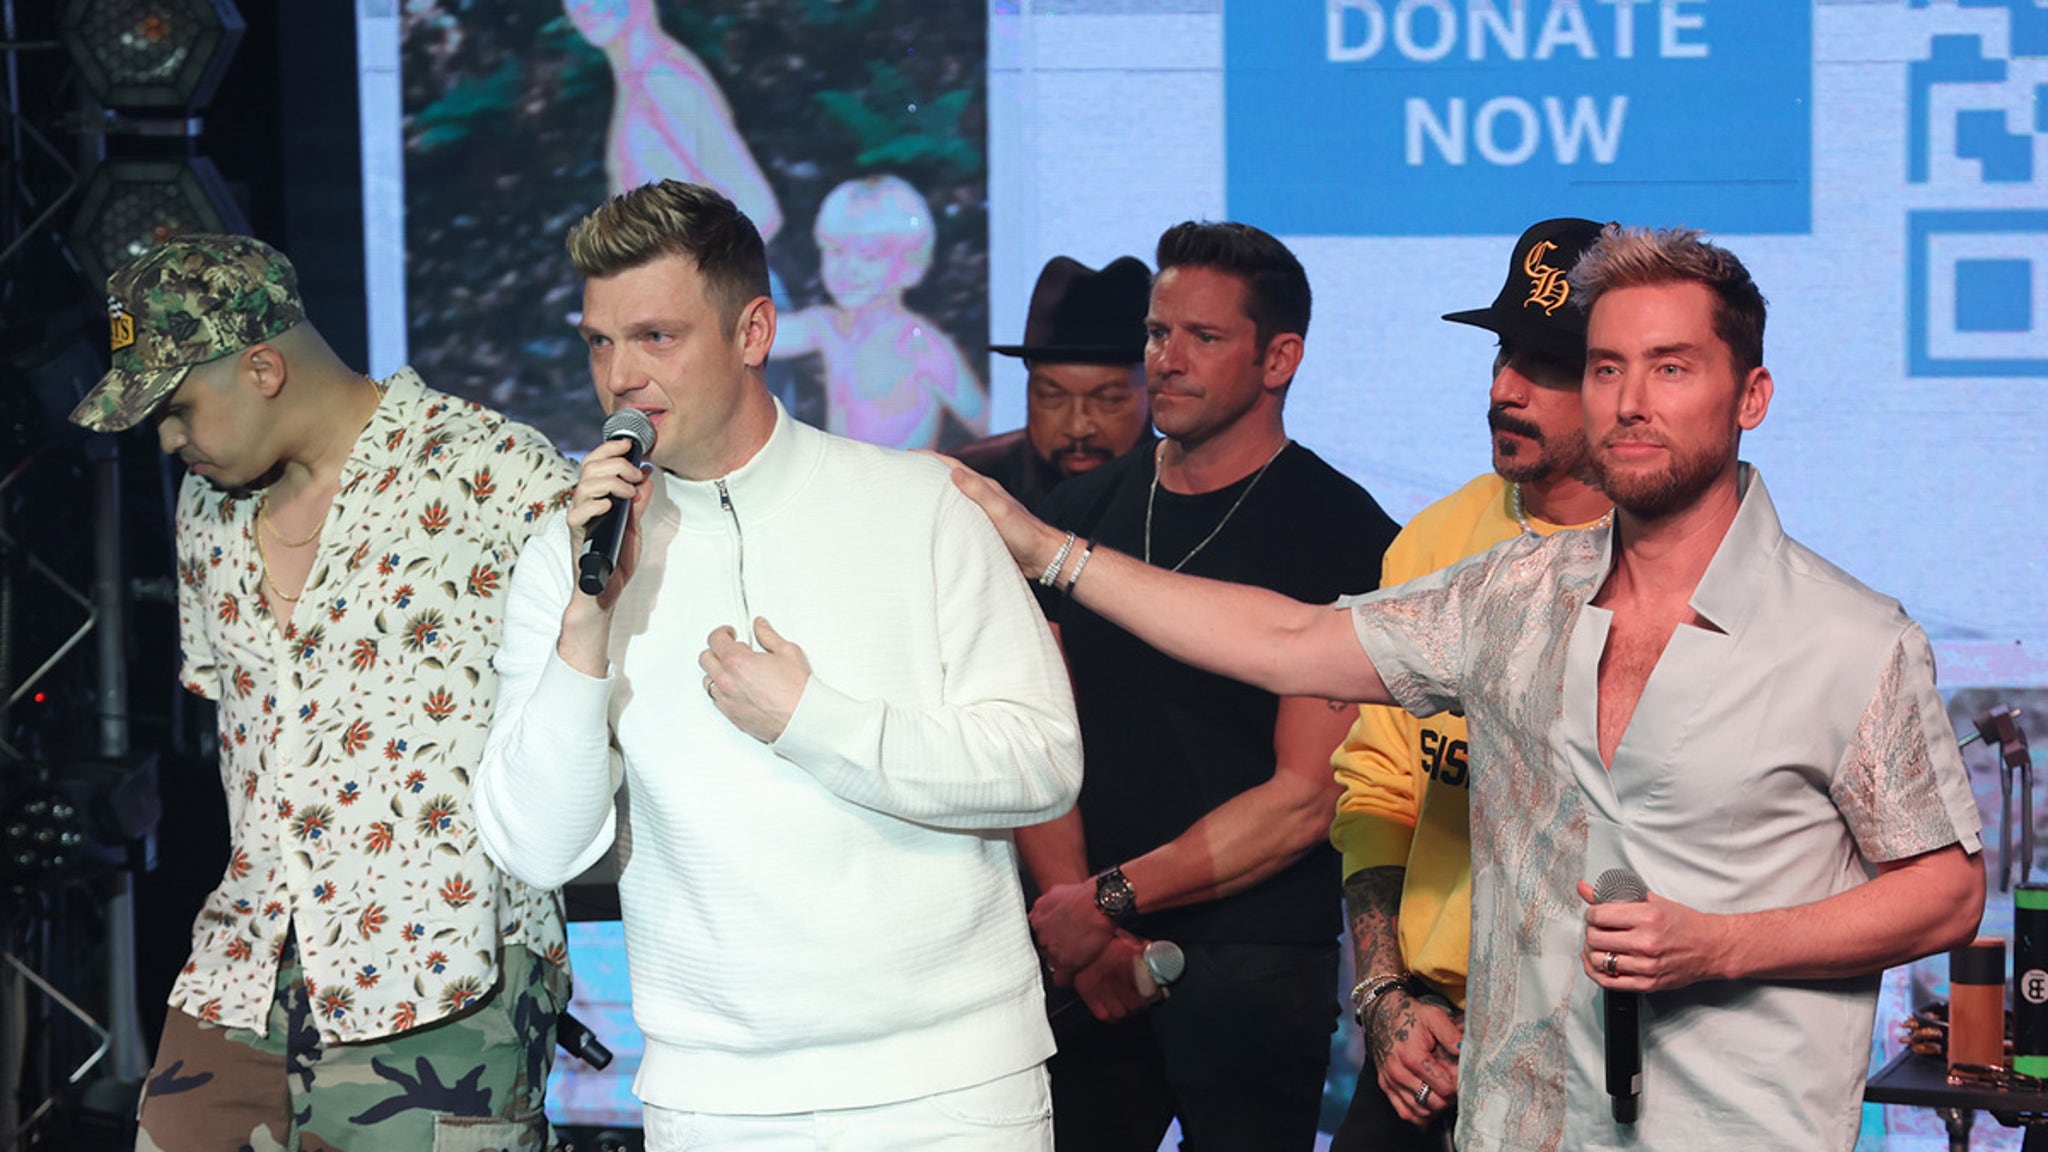 Aaron Carter Benefit Concert with Backstreet Boys, NSYNC & Others Raises $150K thumbnail